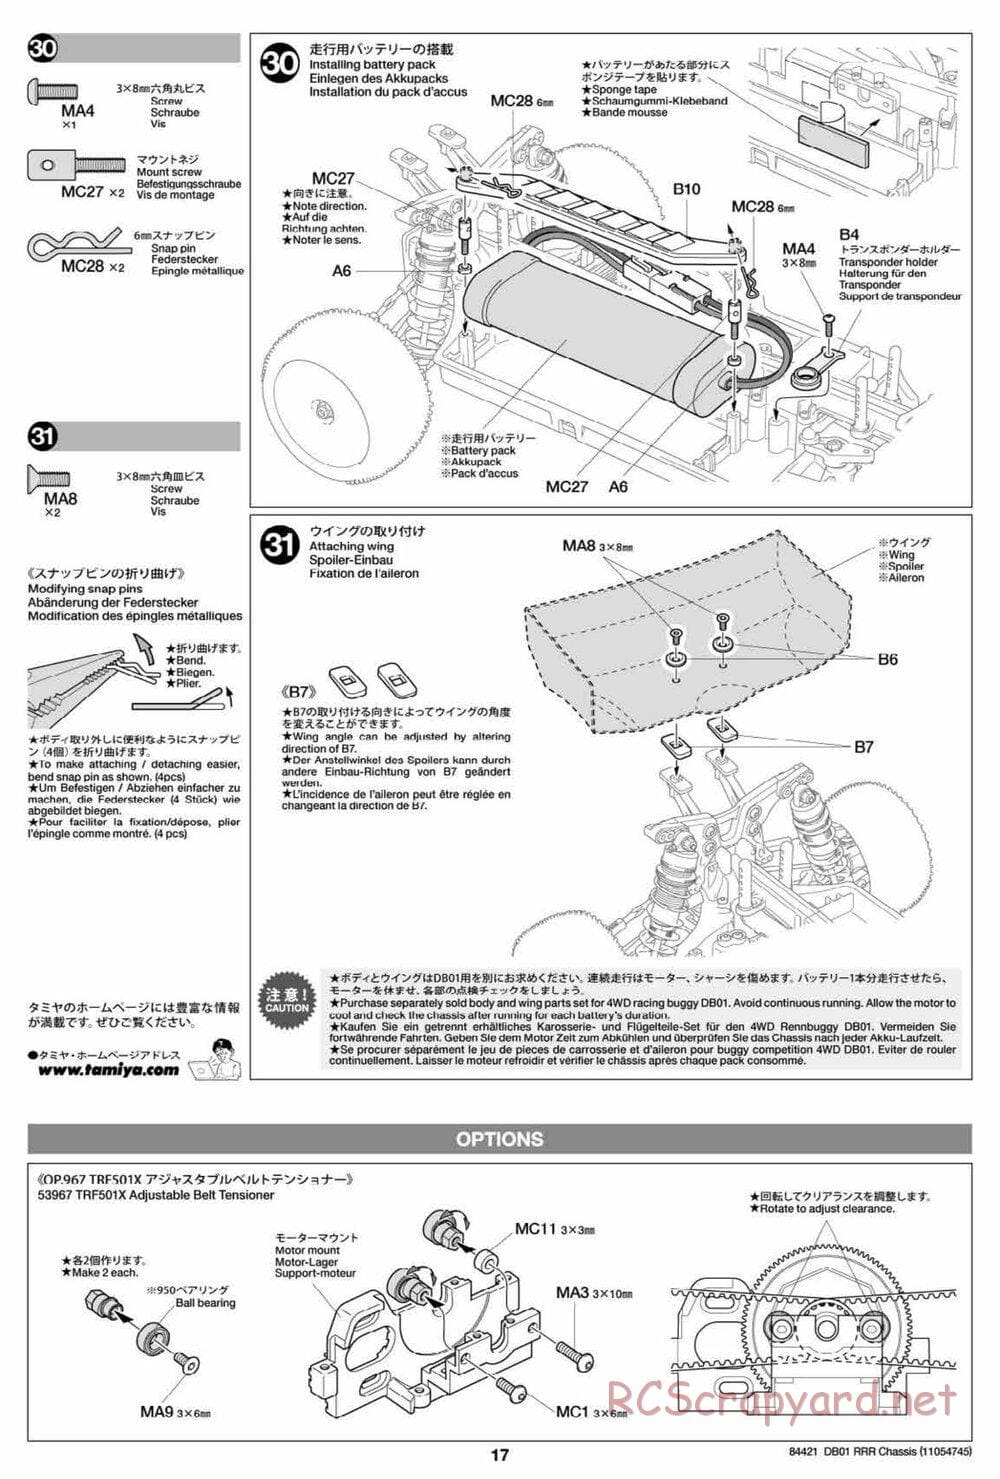 Tamiya - DB-01 RRR Chassis - Manual - Page 17